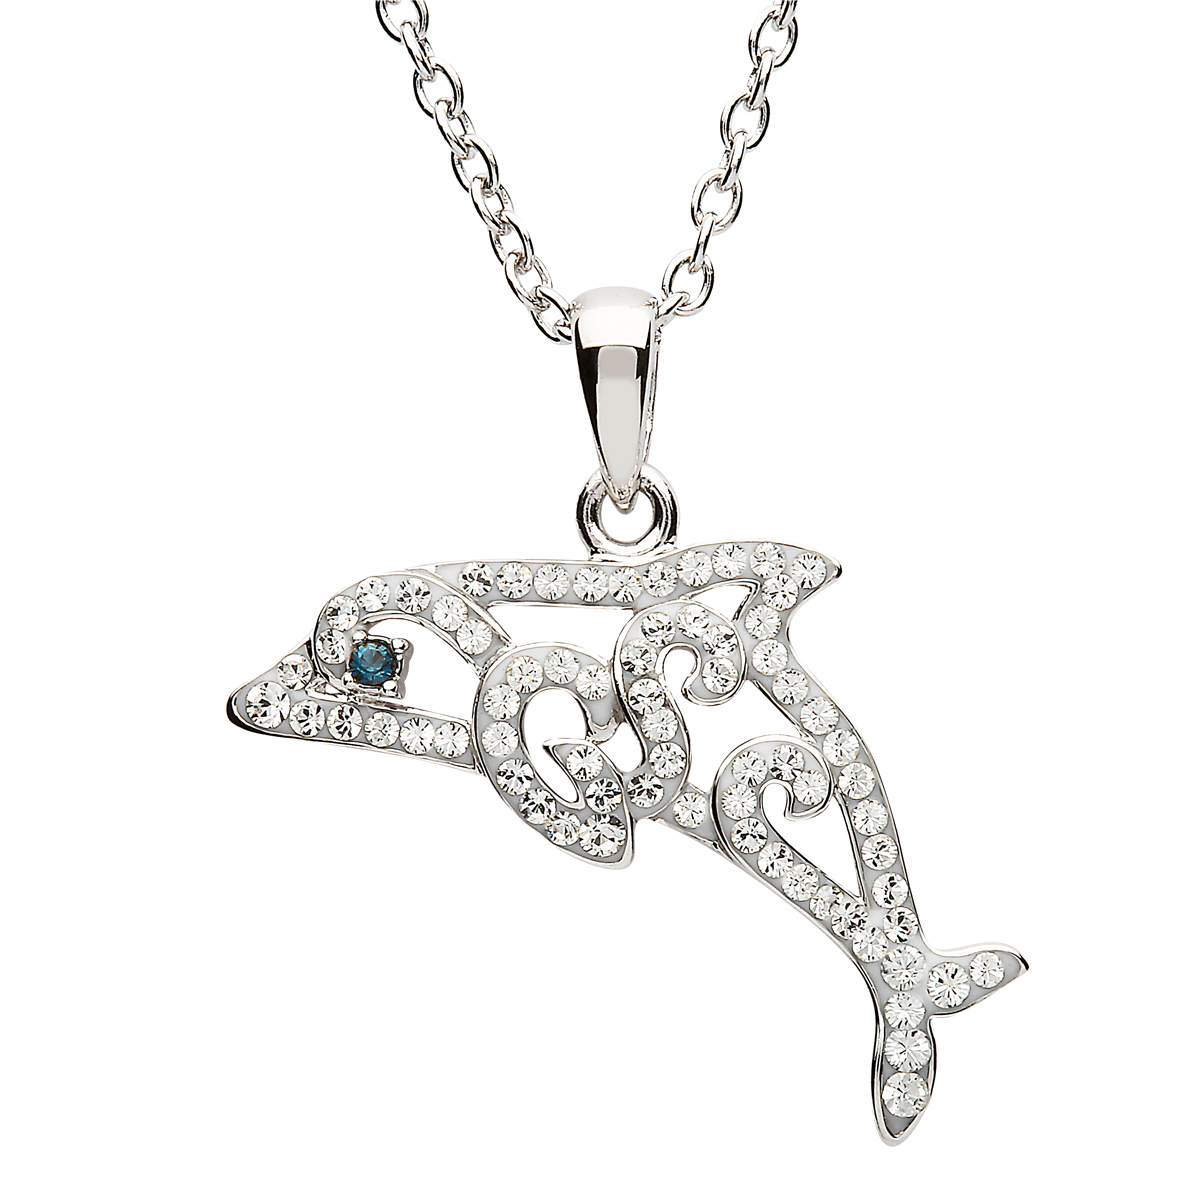 Ocean Crystal Dolphin - Delphin Kette aus Irland - Silber mit Swarovski Kristallen